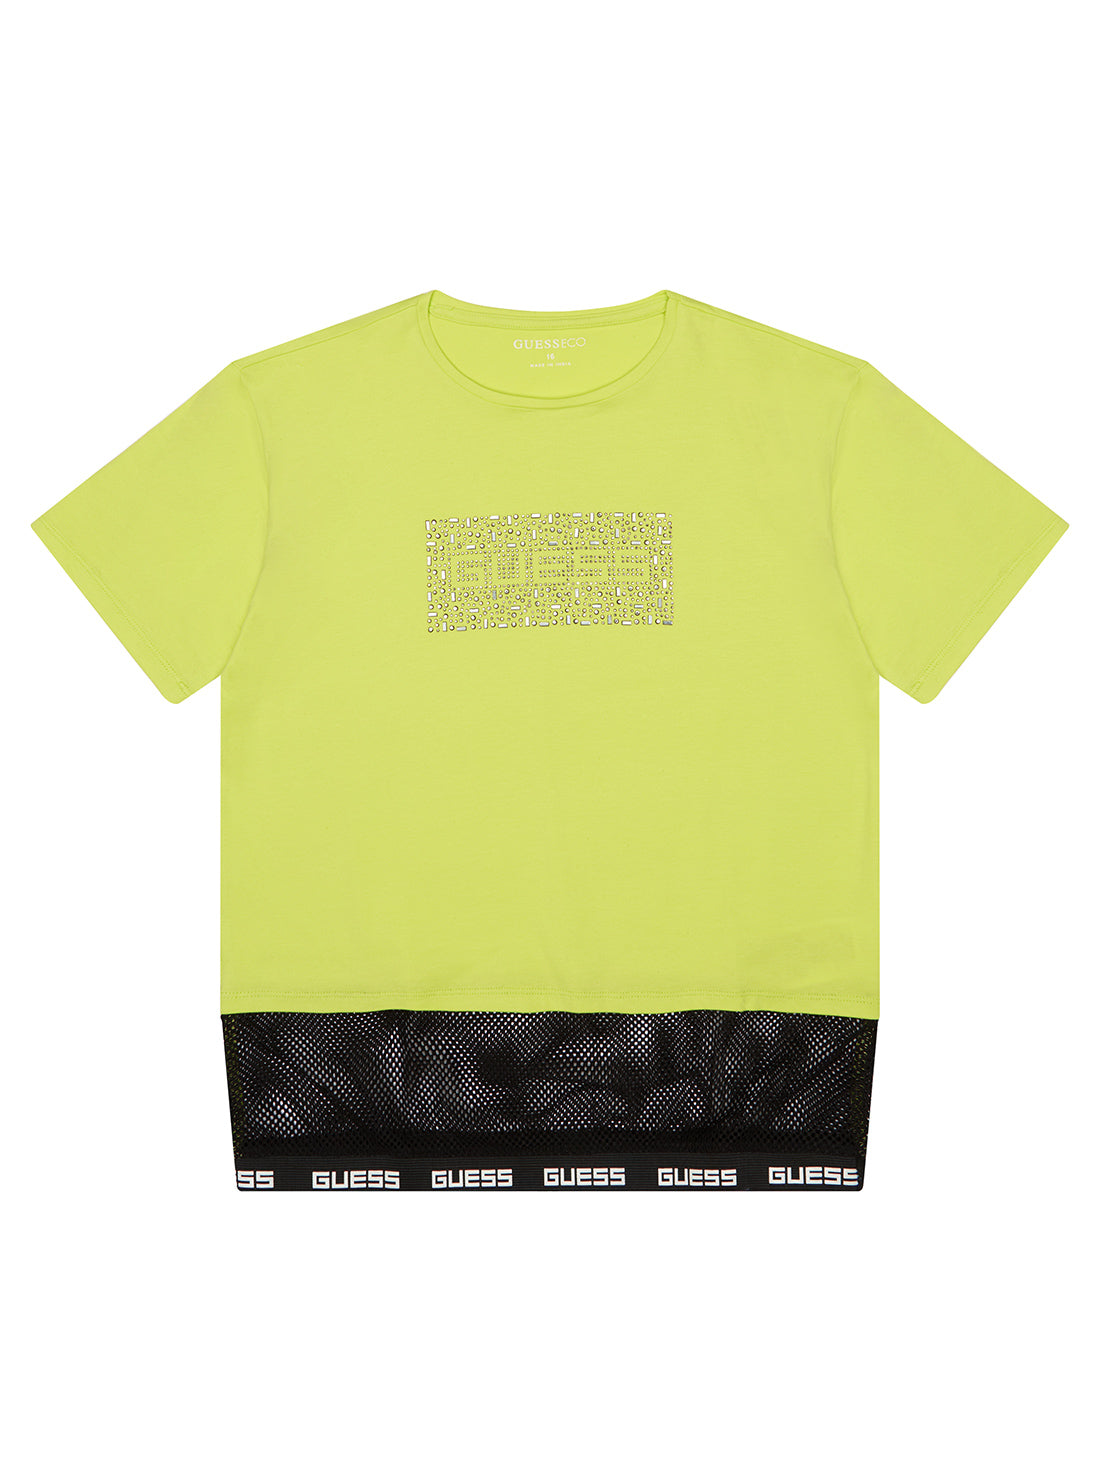 GUESS Big Girl Yellow Rhinestone Logo Mesh T-Shirt (7-16) J2BI43J1313 Front View